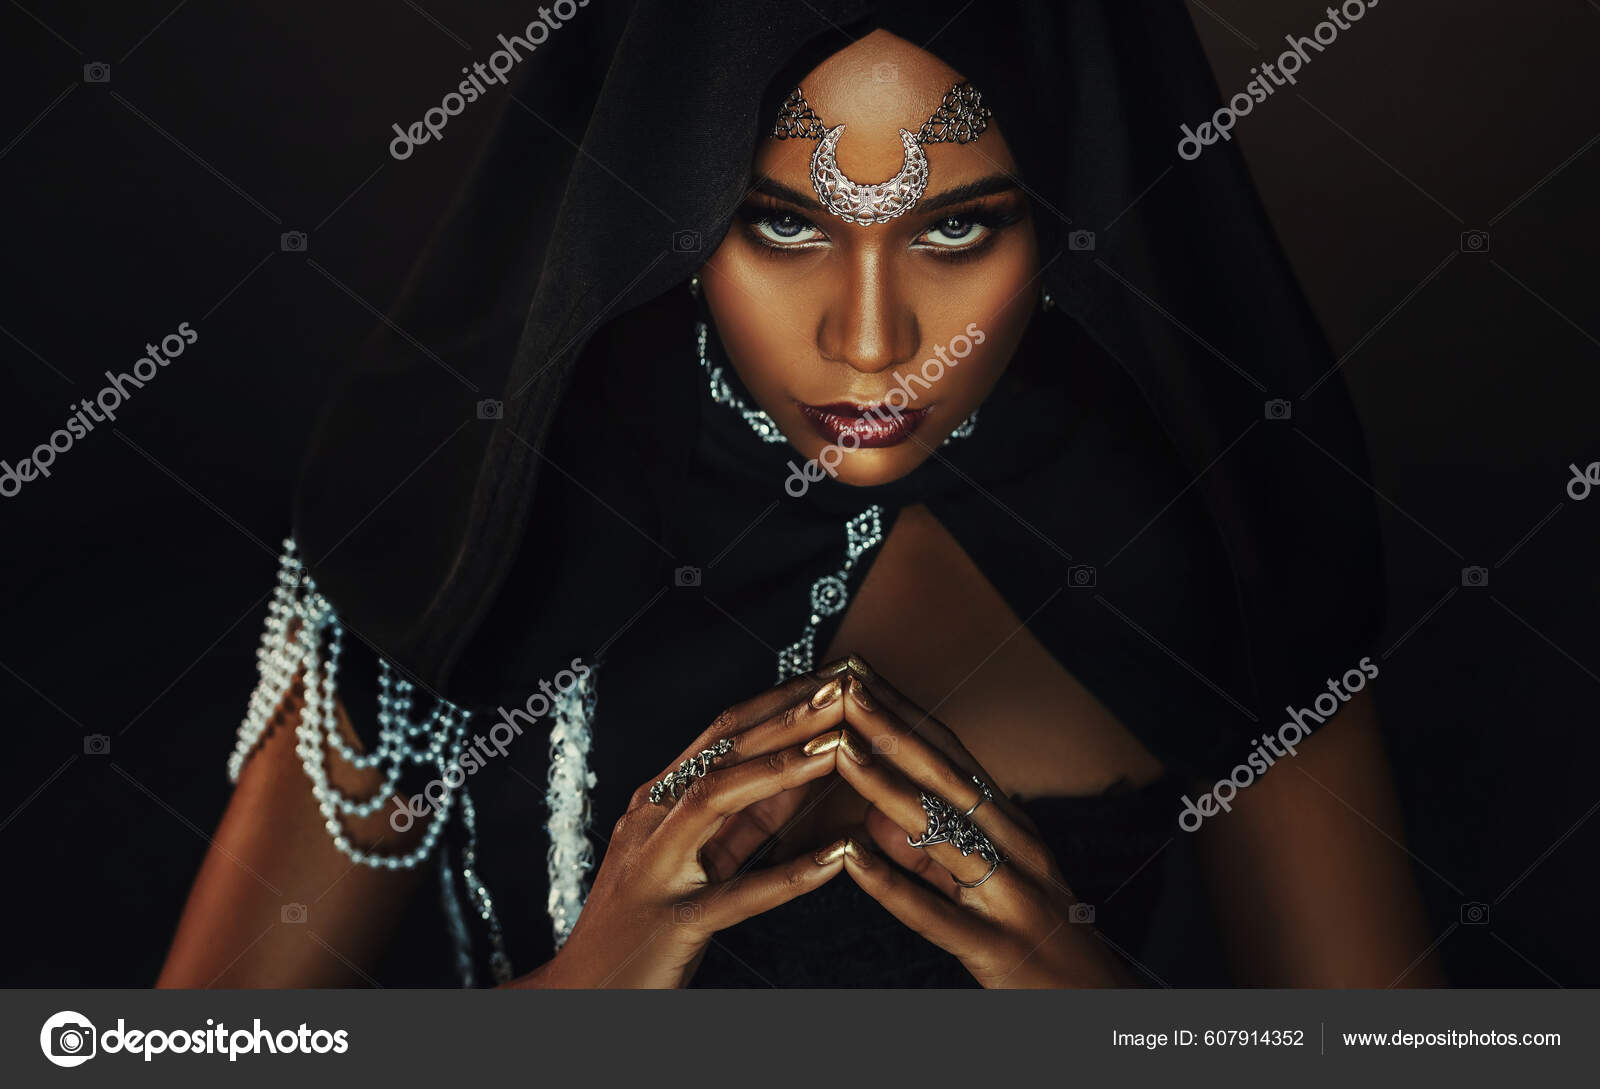 Mulher Em Fantasia De Bruxa De Halloween Foto de Stock - Imagem de